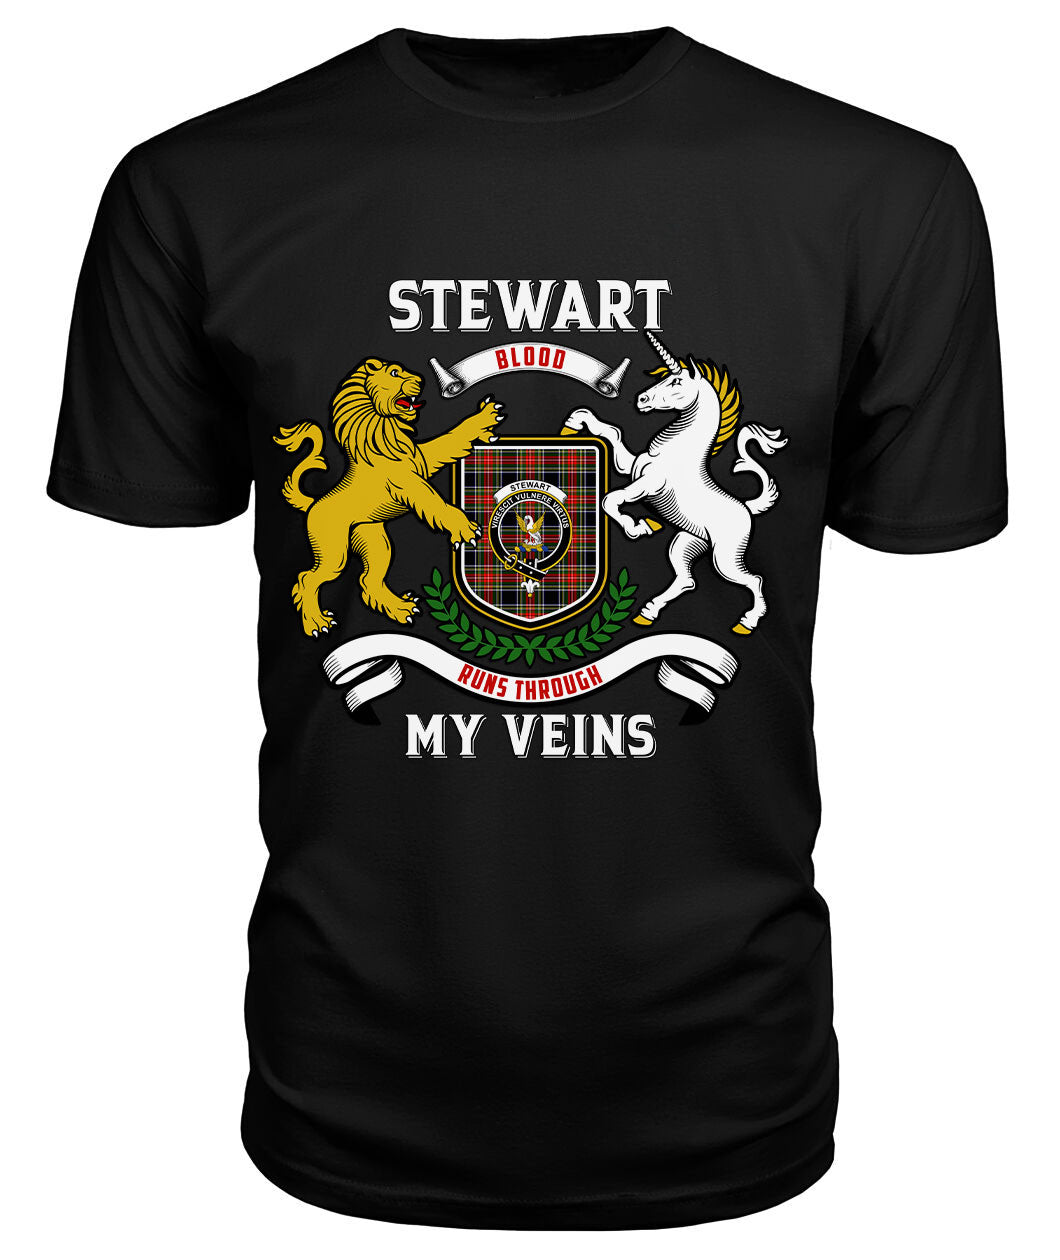 Stewart Black Tartan Crest 2D T-shirt - Blood Runs Through My Veins Style